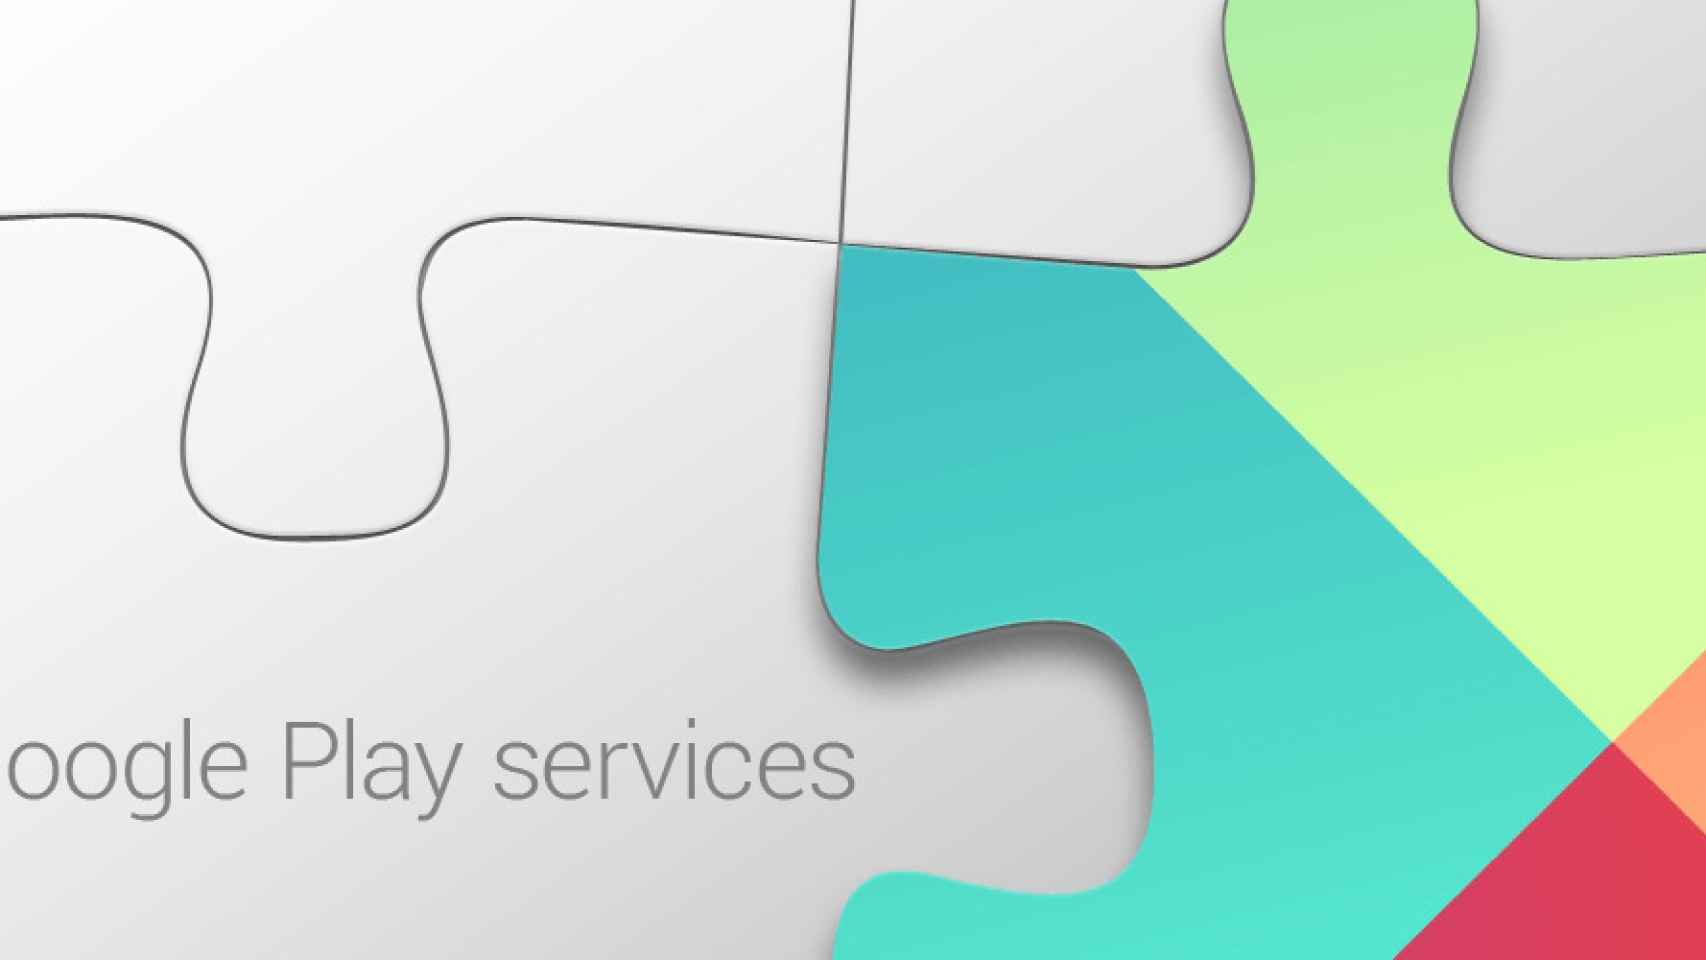 Google Play Services 6.5 llega con muchas mejoras en Maps, Drive, Fit y más